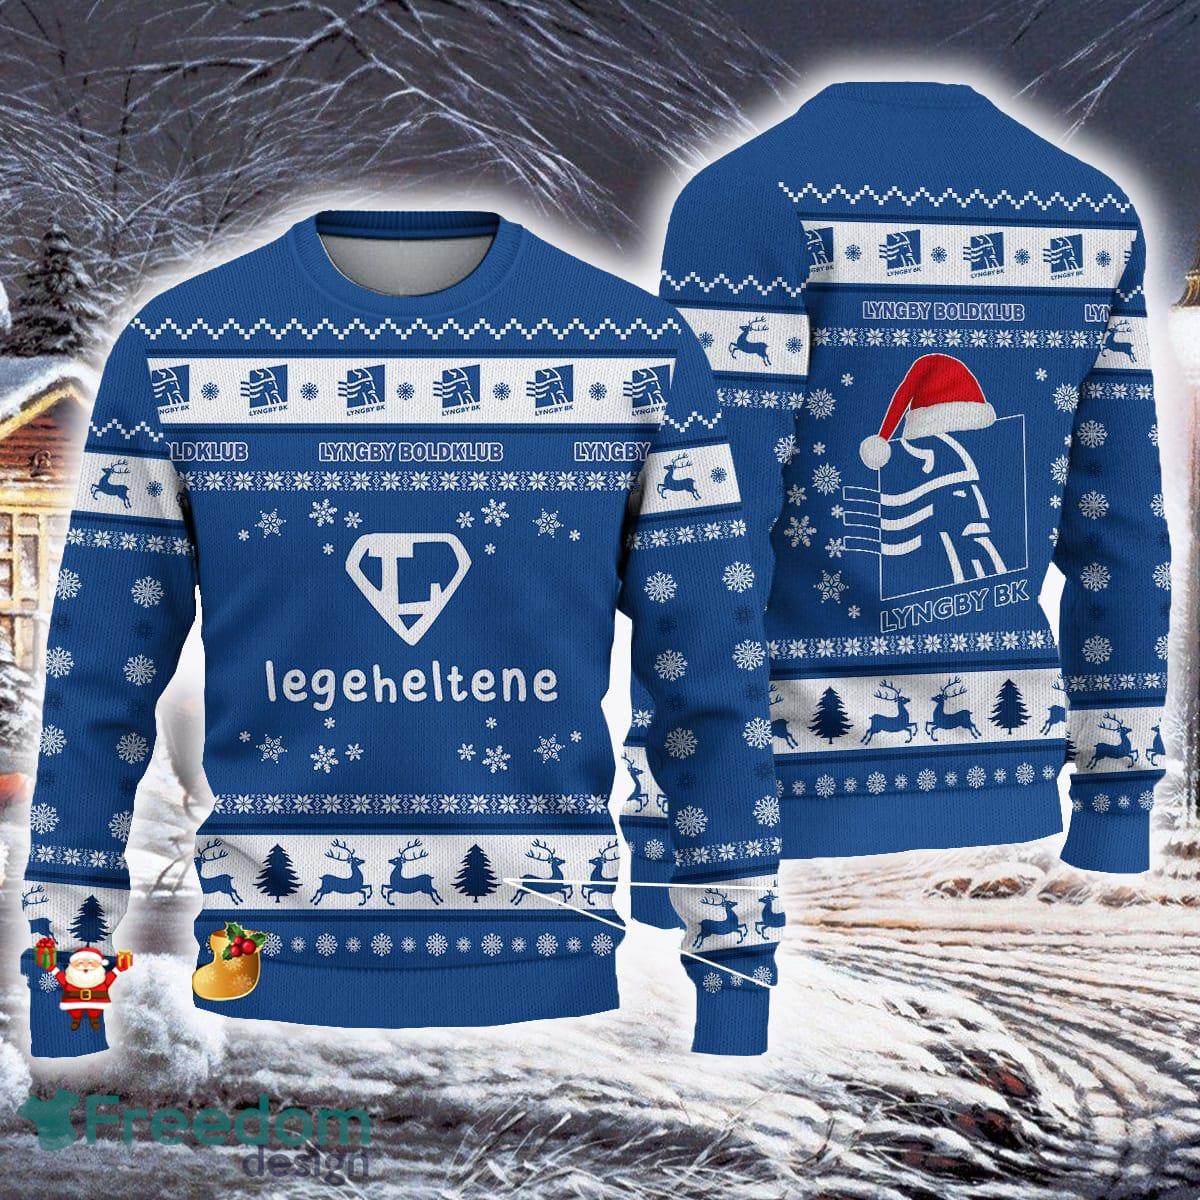 MLB Ugly Sweaters, MLB Ugly Christmas Sweater, Holiday Pajama Set